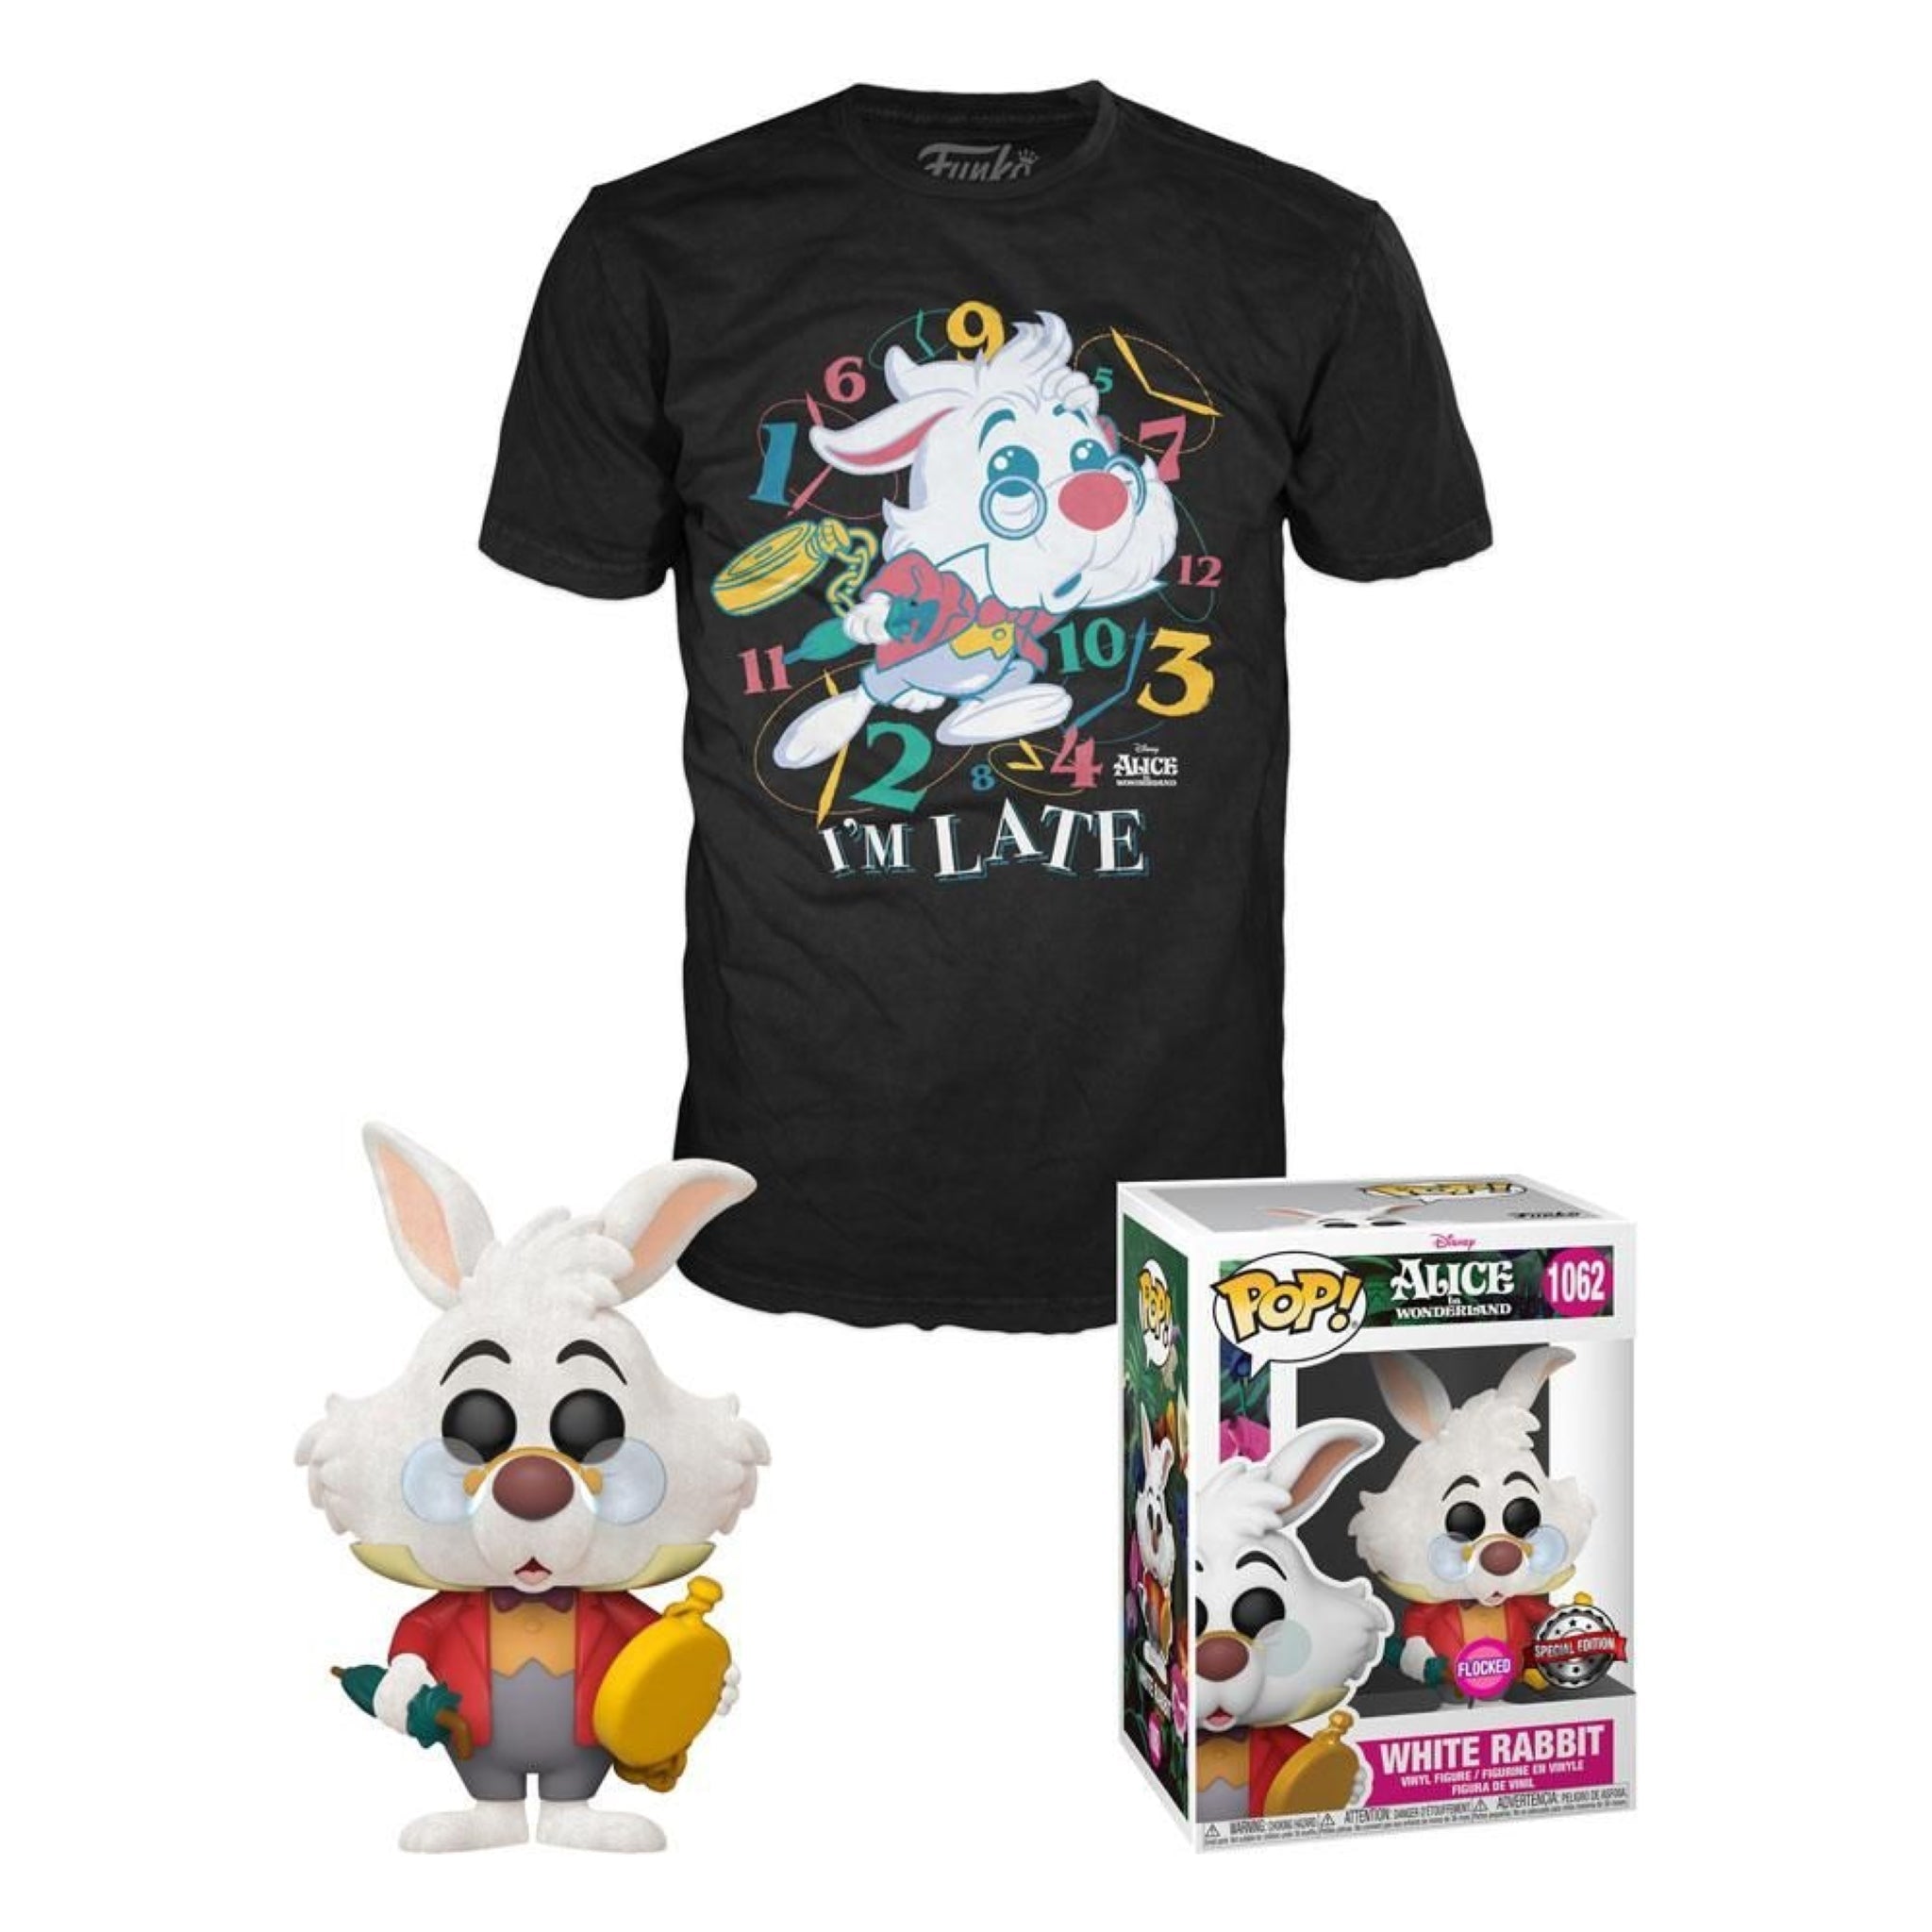 Pop! Disney: Alice in Wonderland (70th Anniversary) - White Rabbit with  Watch